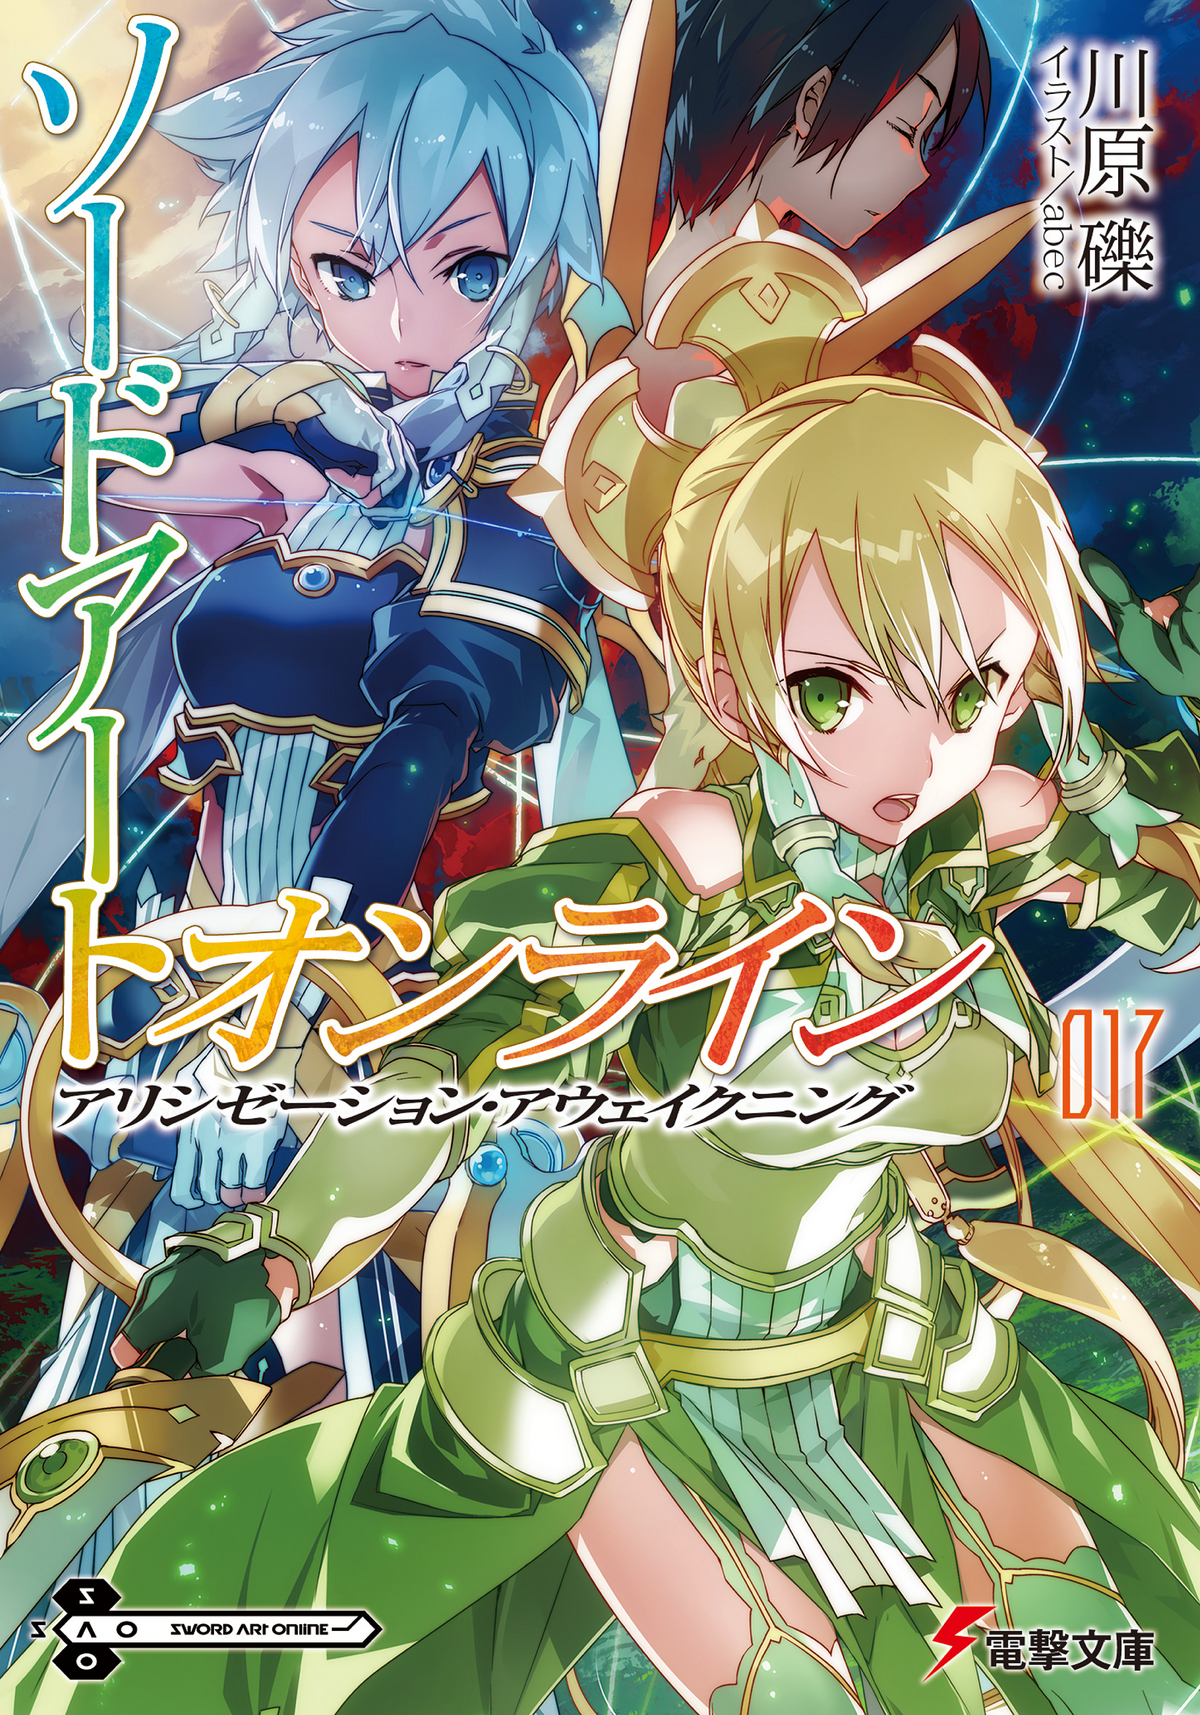 Sword Art Online: confira capa e detalhes da edição nacional da light novel